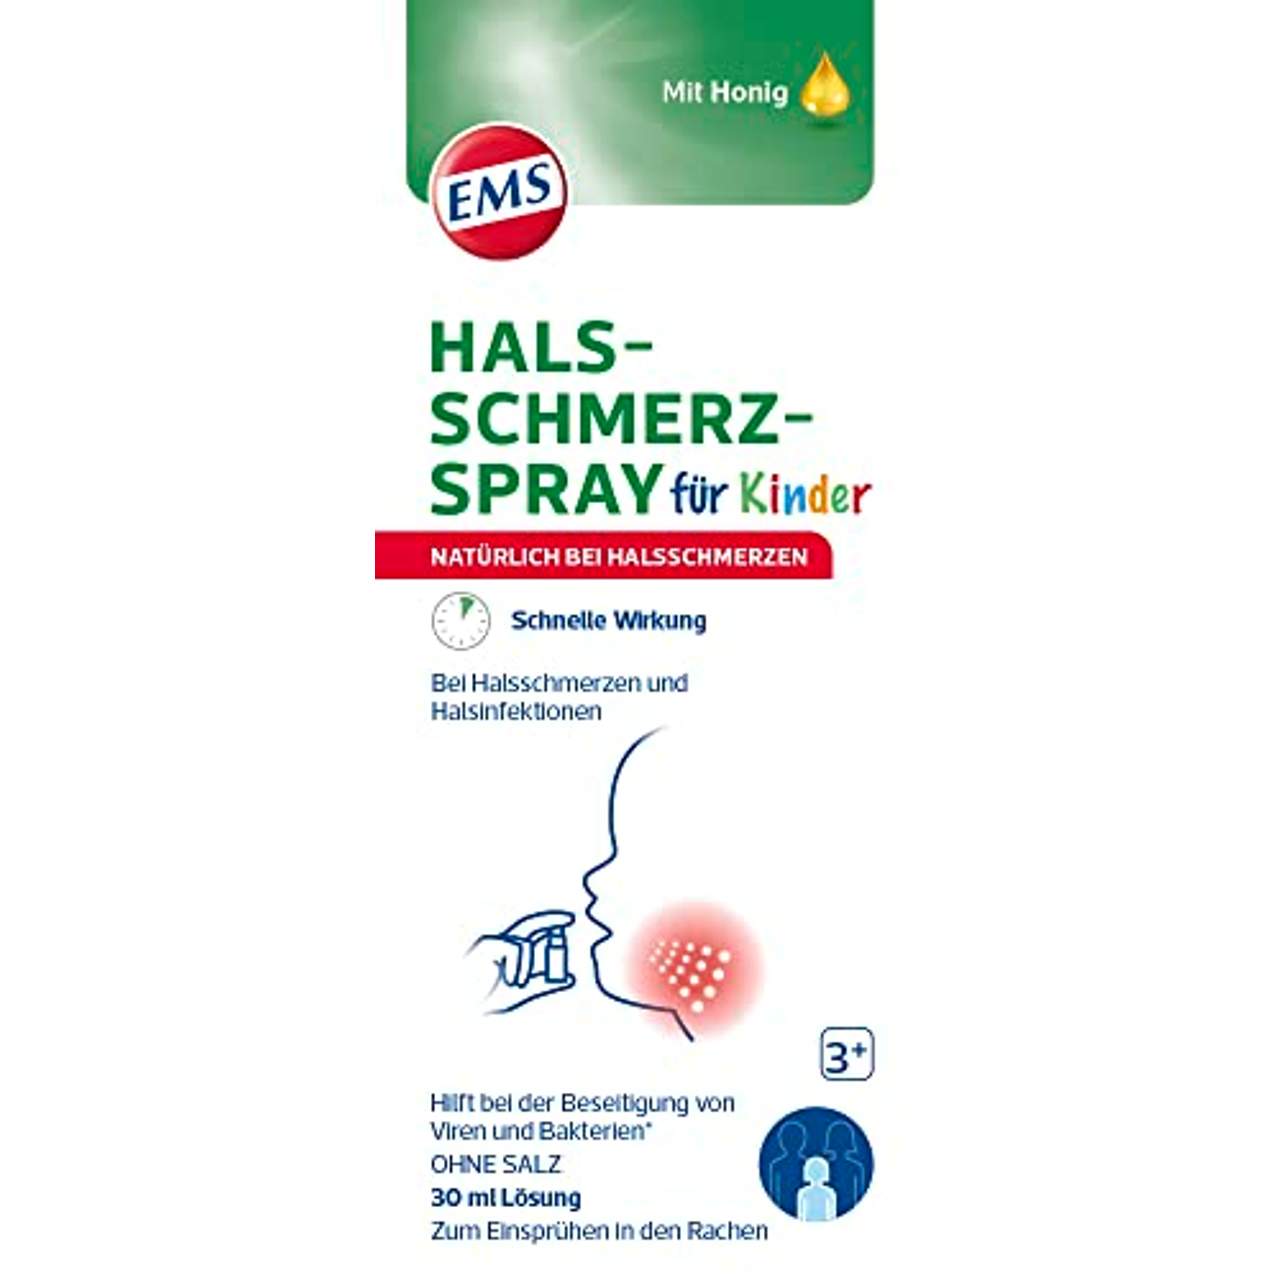 EMS Halsschmerz-Spray für Kinder: Schnelle Hilfe bei Halsschmerzen für Kinder ab 3 Jahren